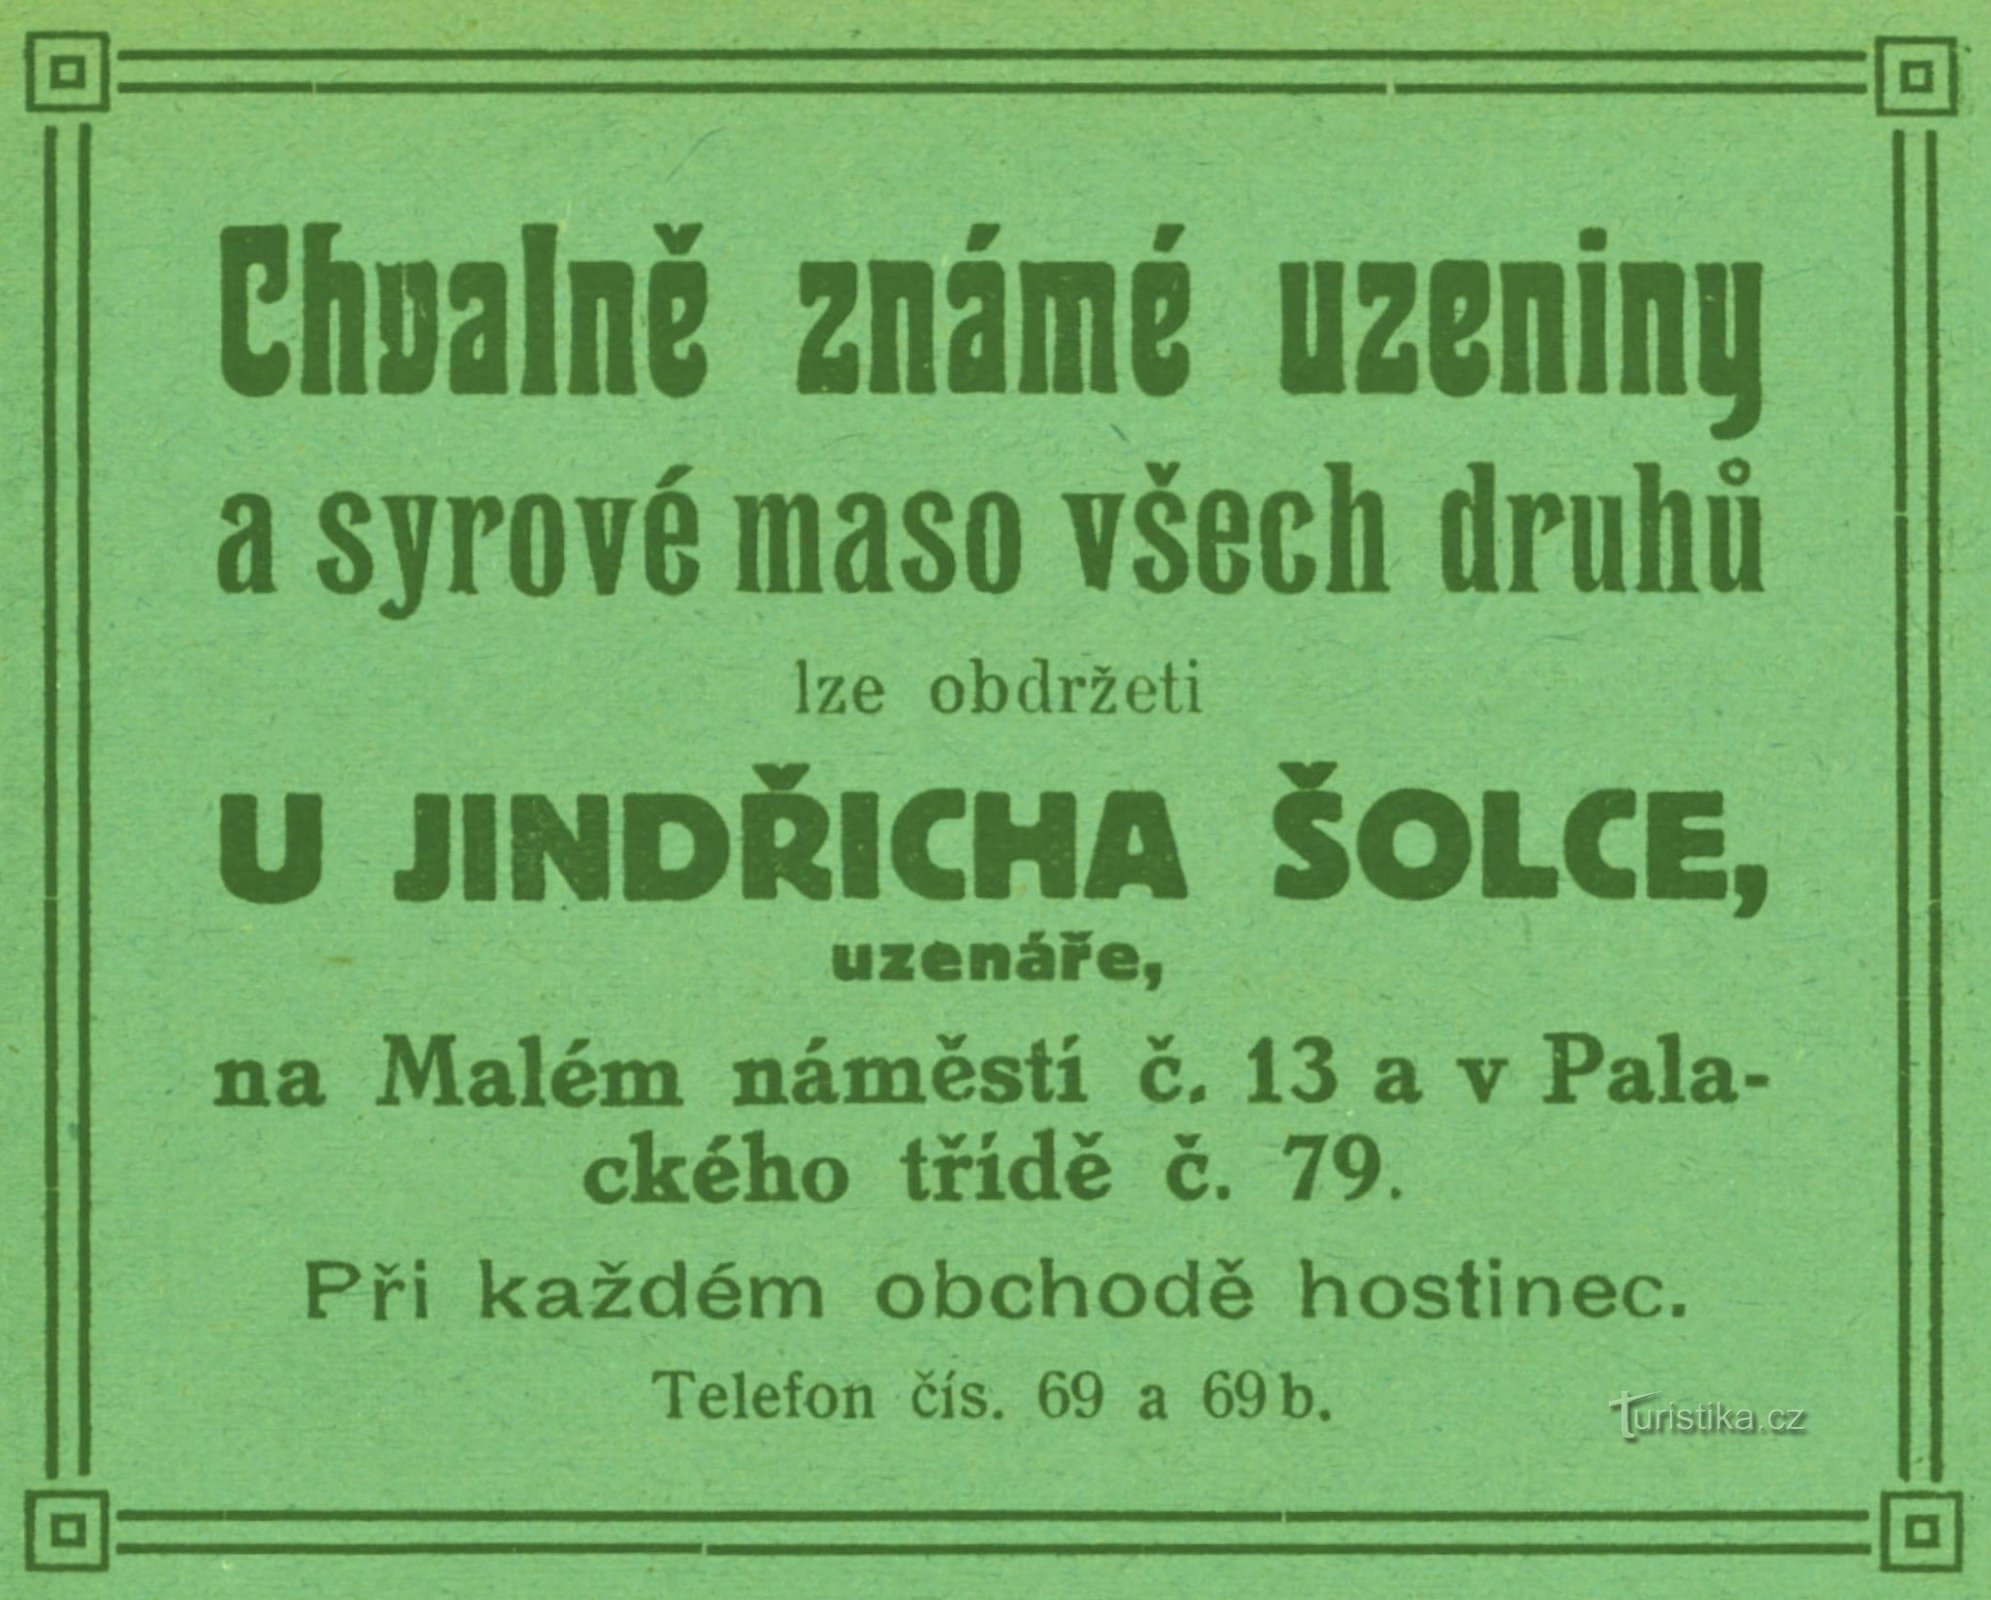 Annonce for Jindřich Šolecs slagterbutik fra 1911